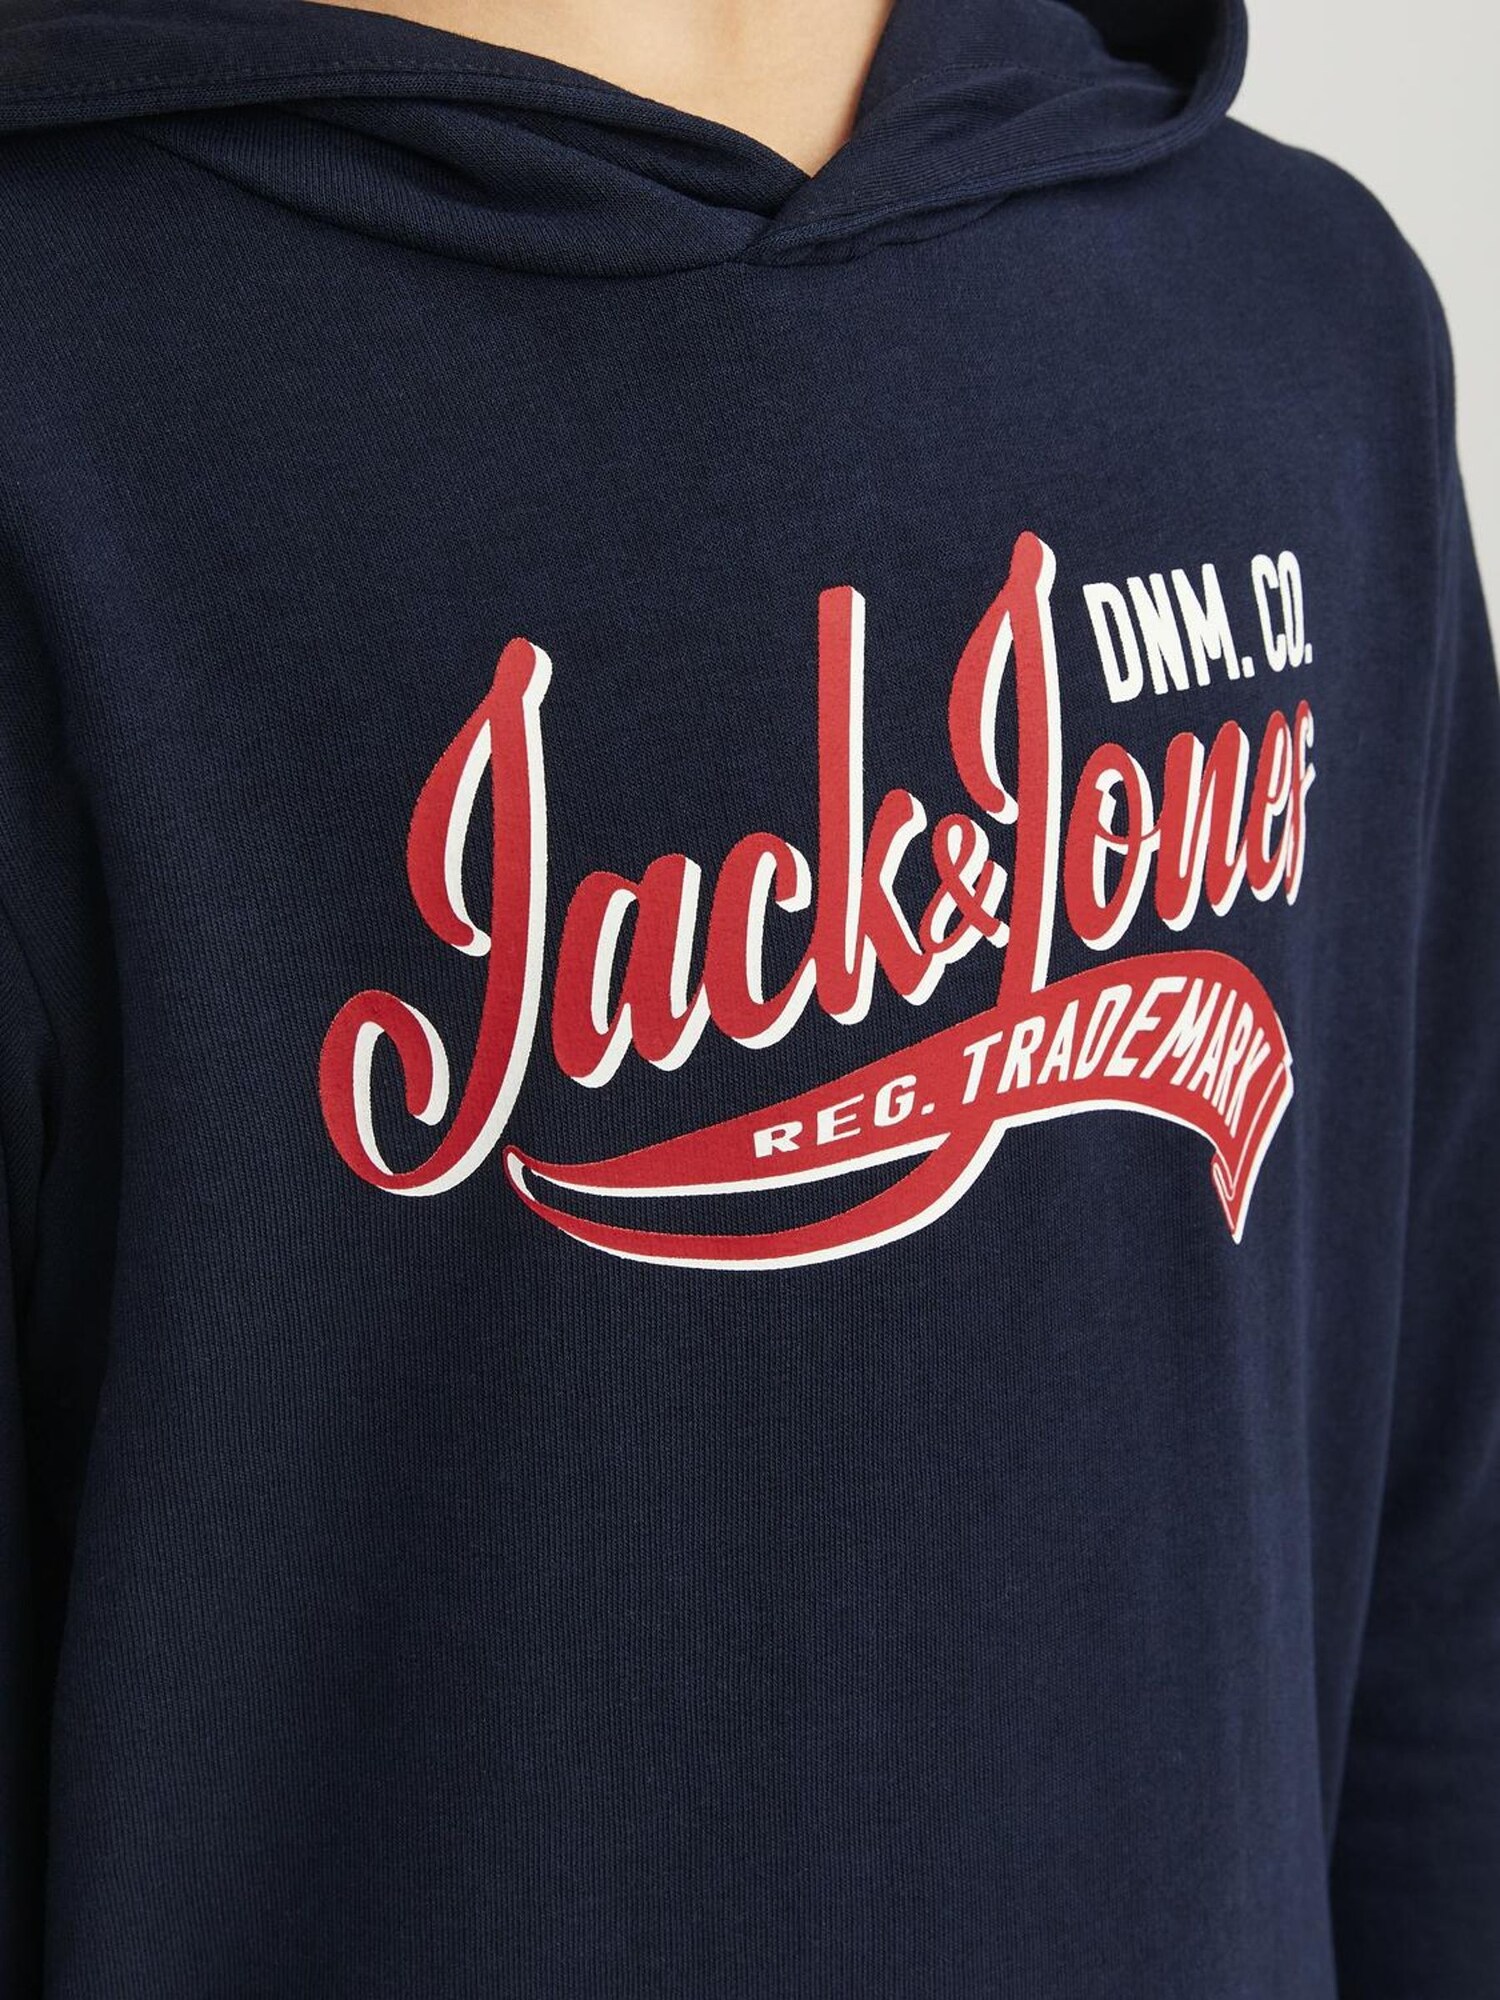 Sweatshirt von Jack & Jones Junior